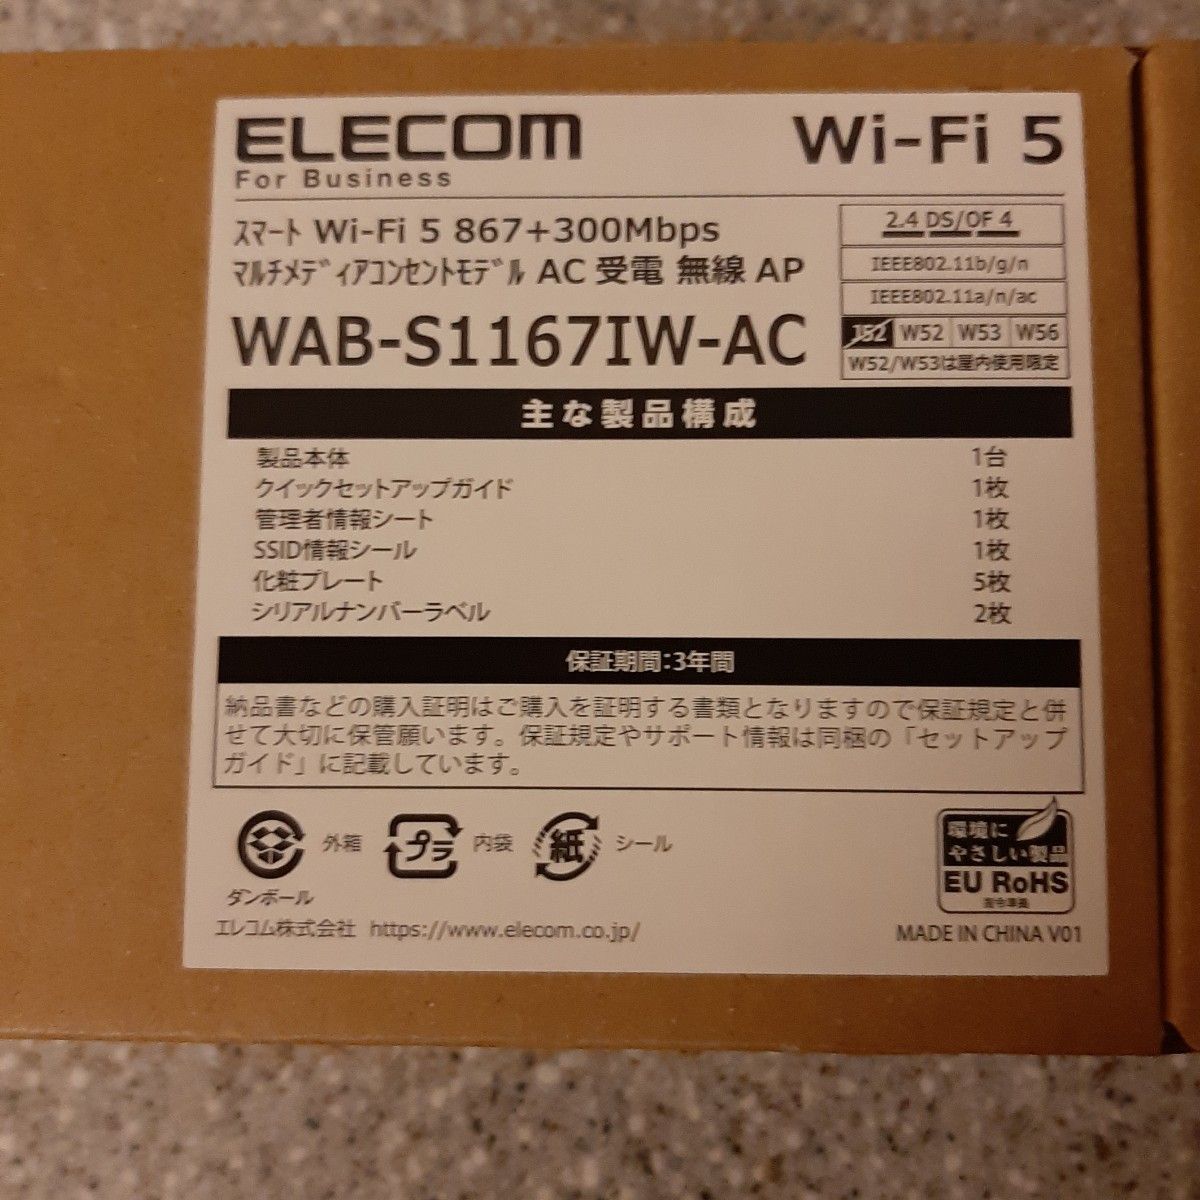 ELECOM WAB-S1167IW-AC スマートWi-Fi5 867+300Mbps 無線AP マルチメディアコンセントモデル